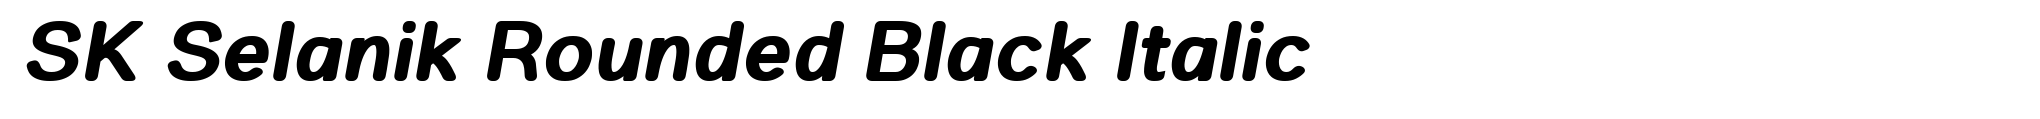 SK Selanik Rounded Black Italic image